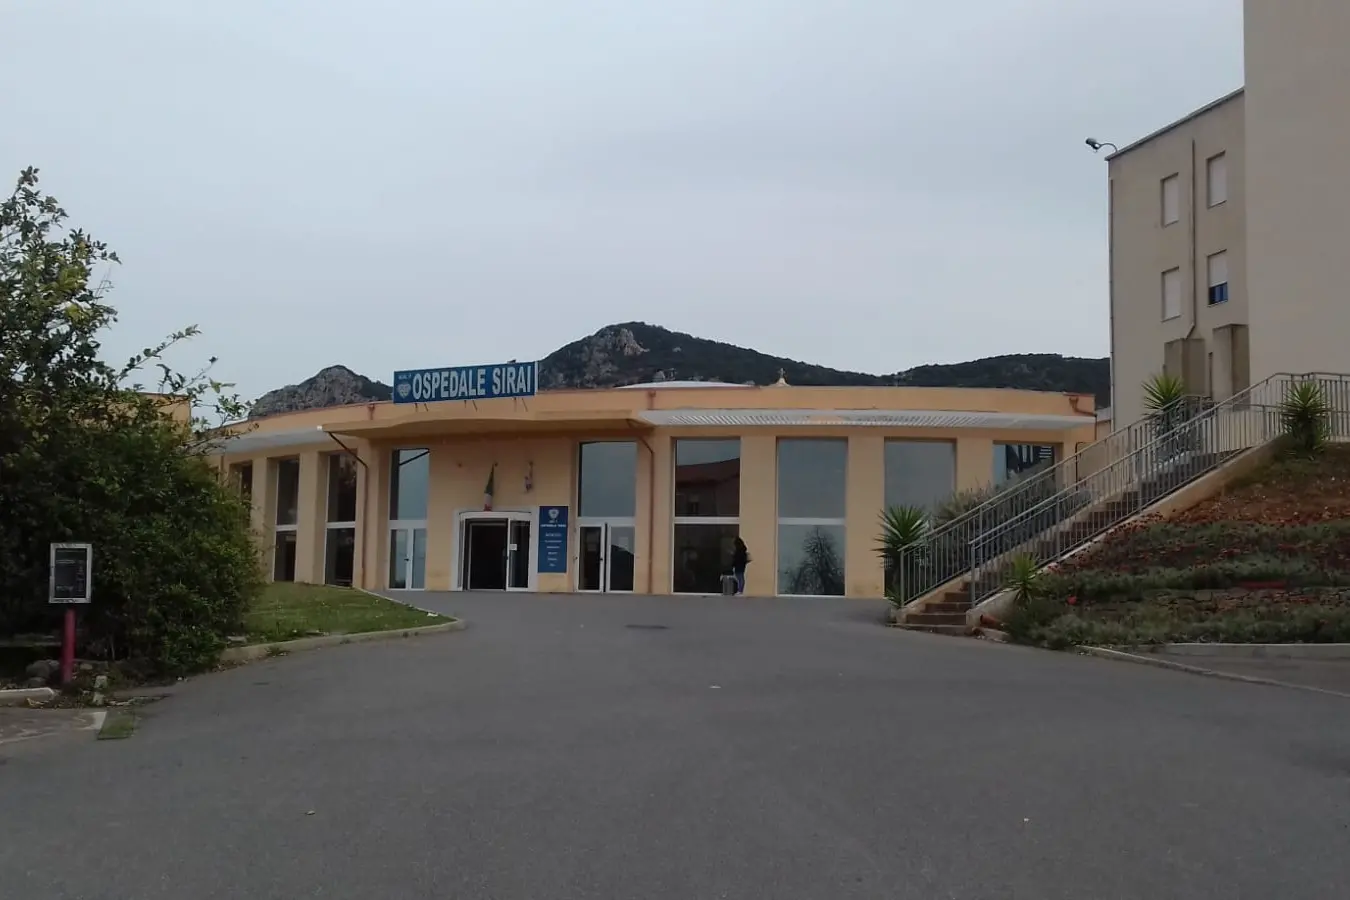 L'ingresso dell'ospedale Sirai (foto Scano)